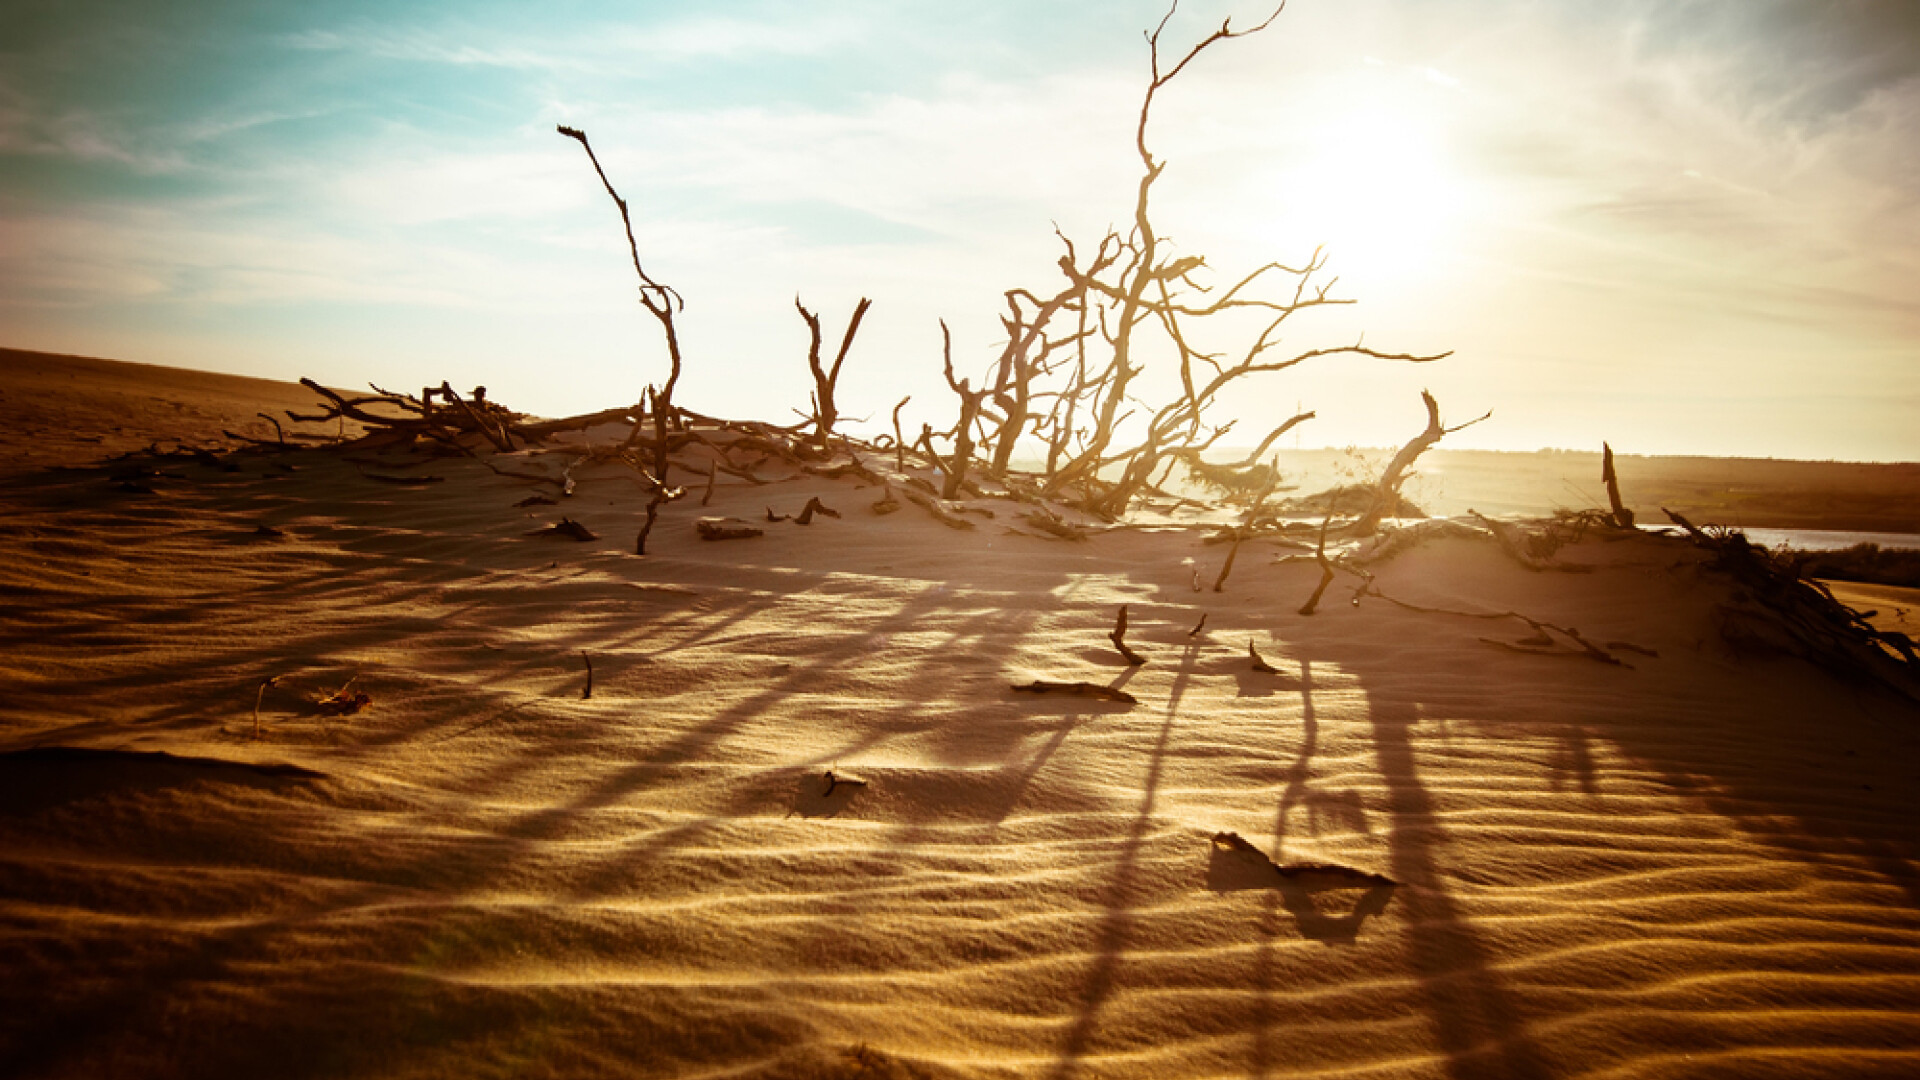 dune de nisip in desert